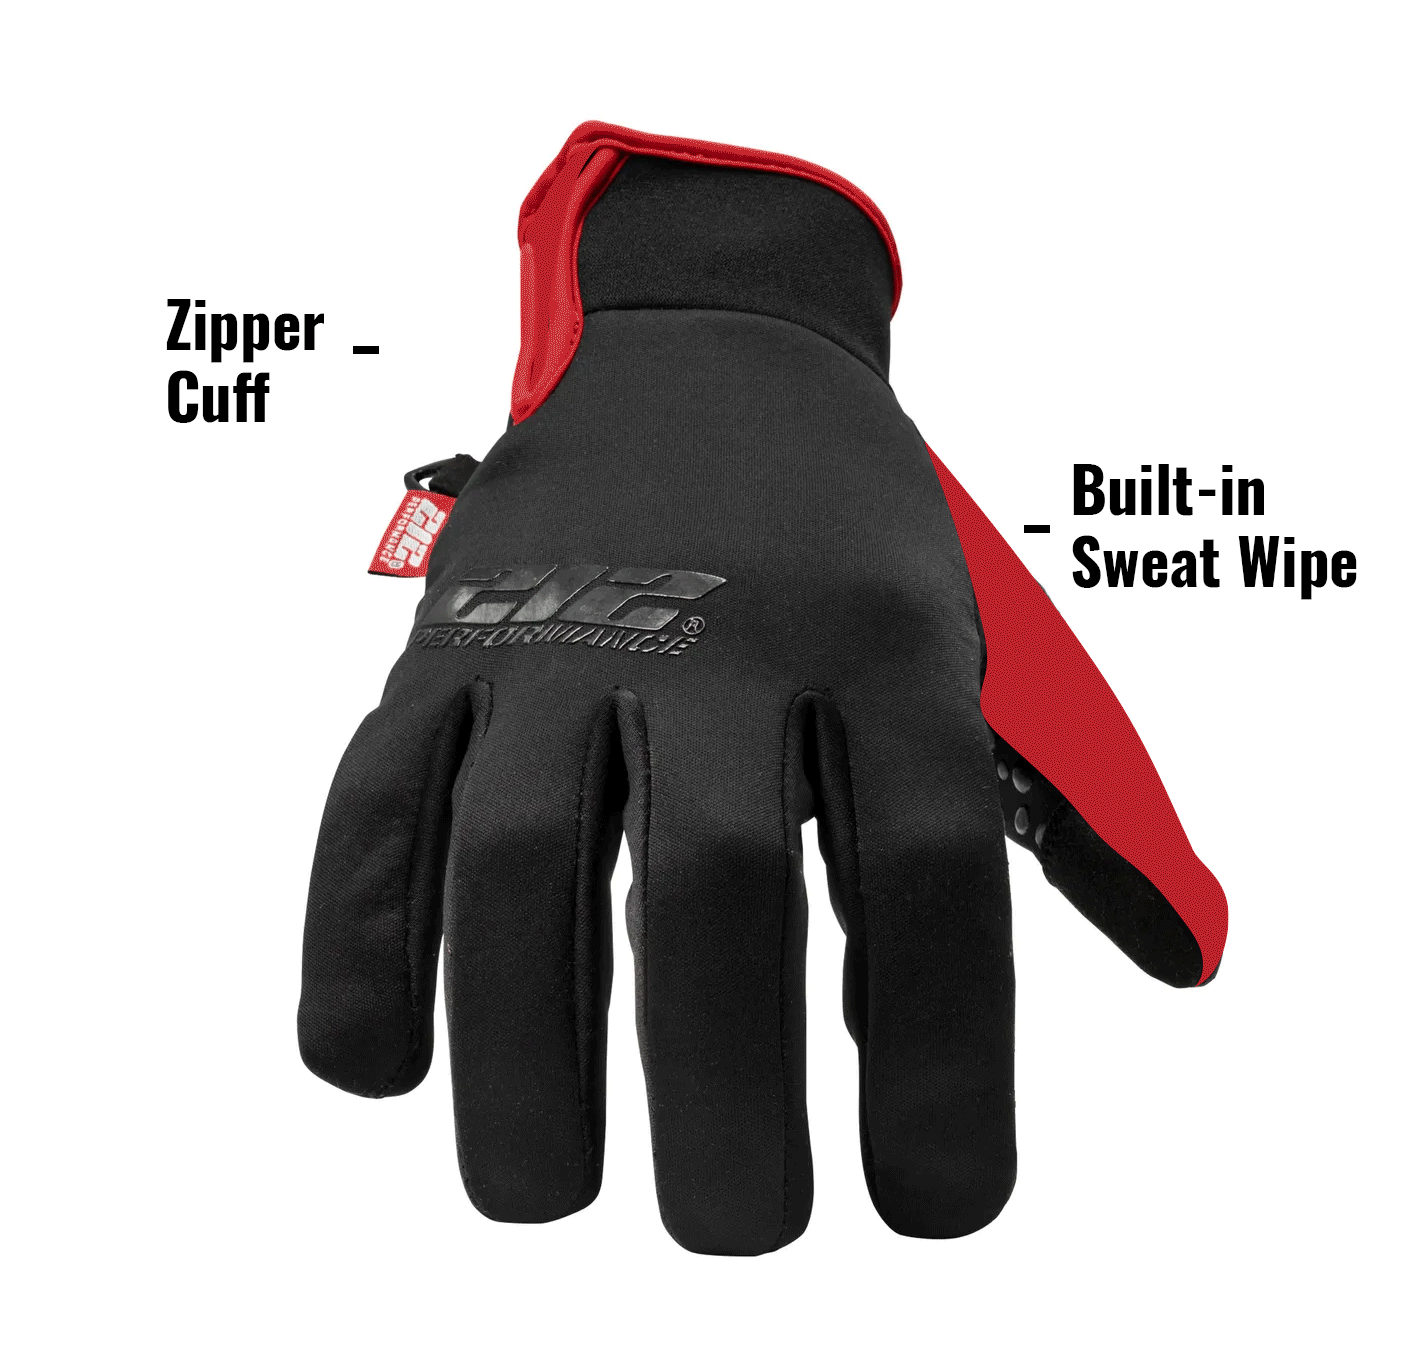 Zipper Cuff.Built-in Sweat Wipe